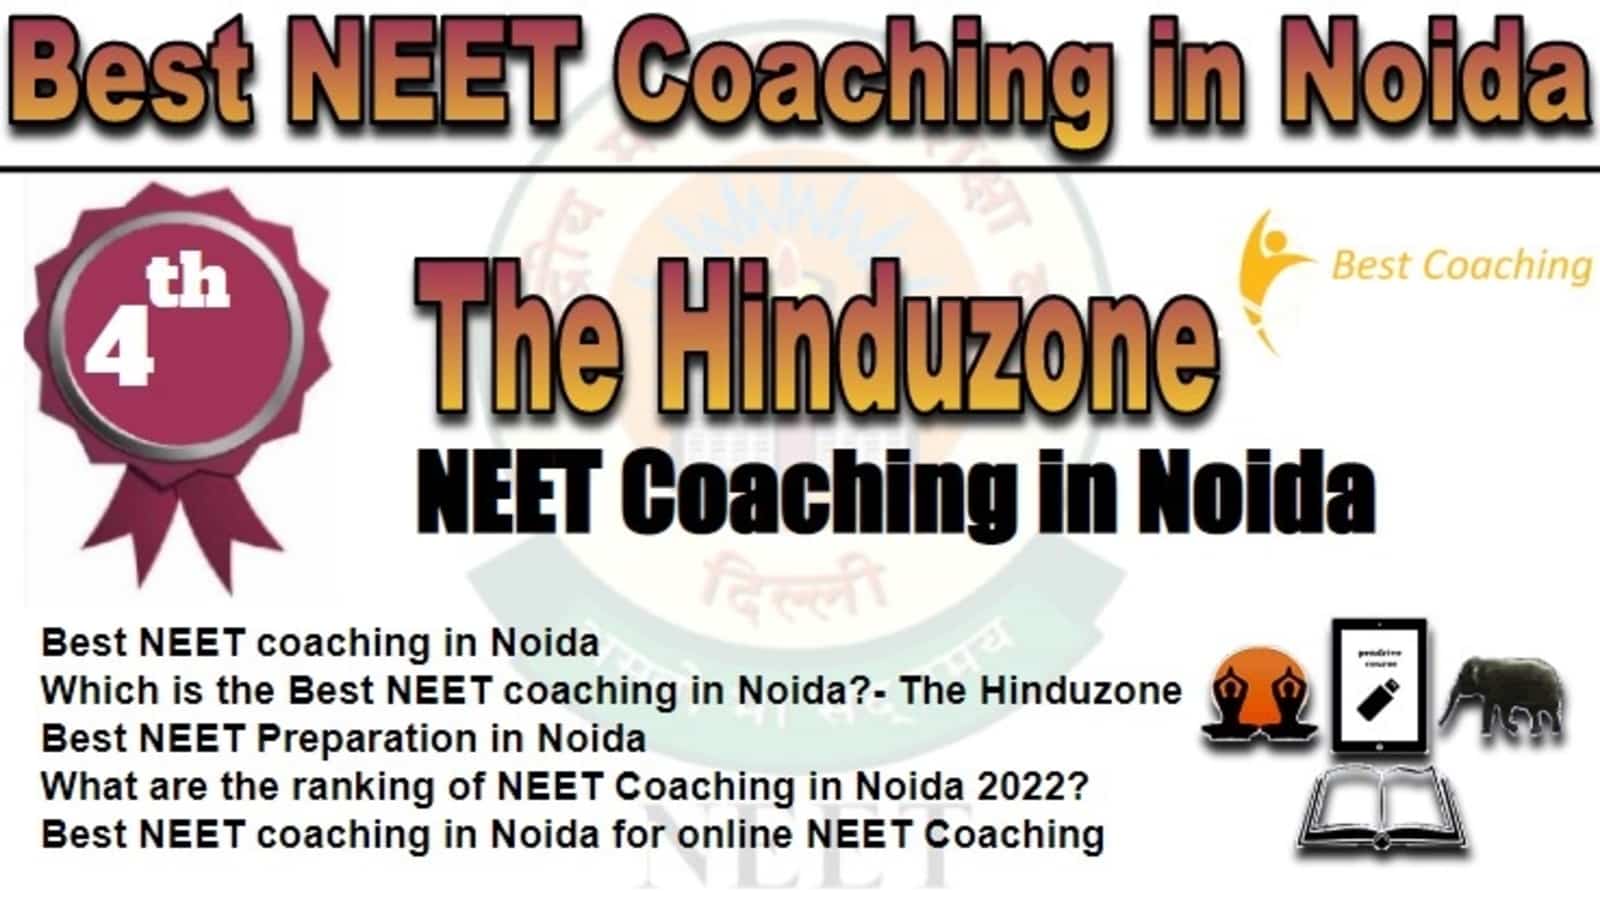 Rank 4 Best NEET Coaching in Noida